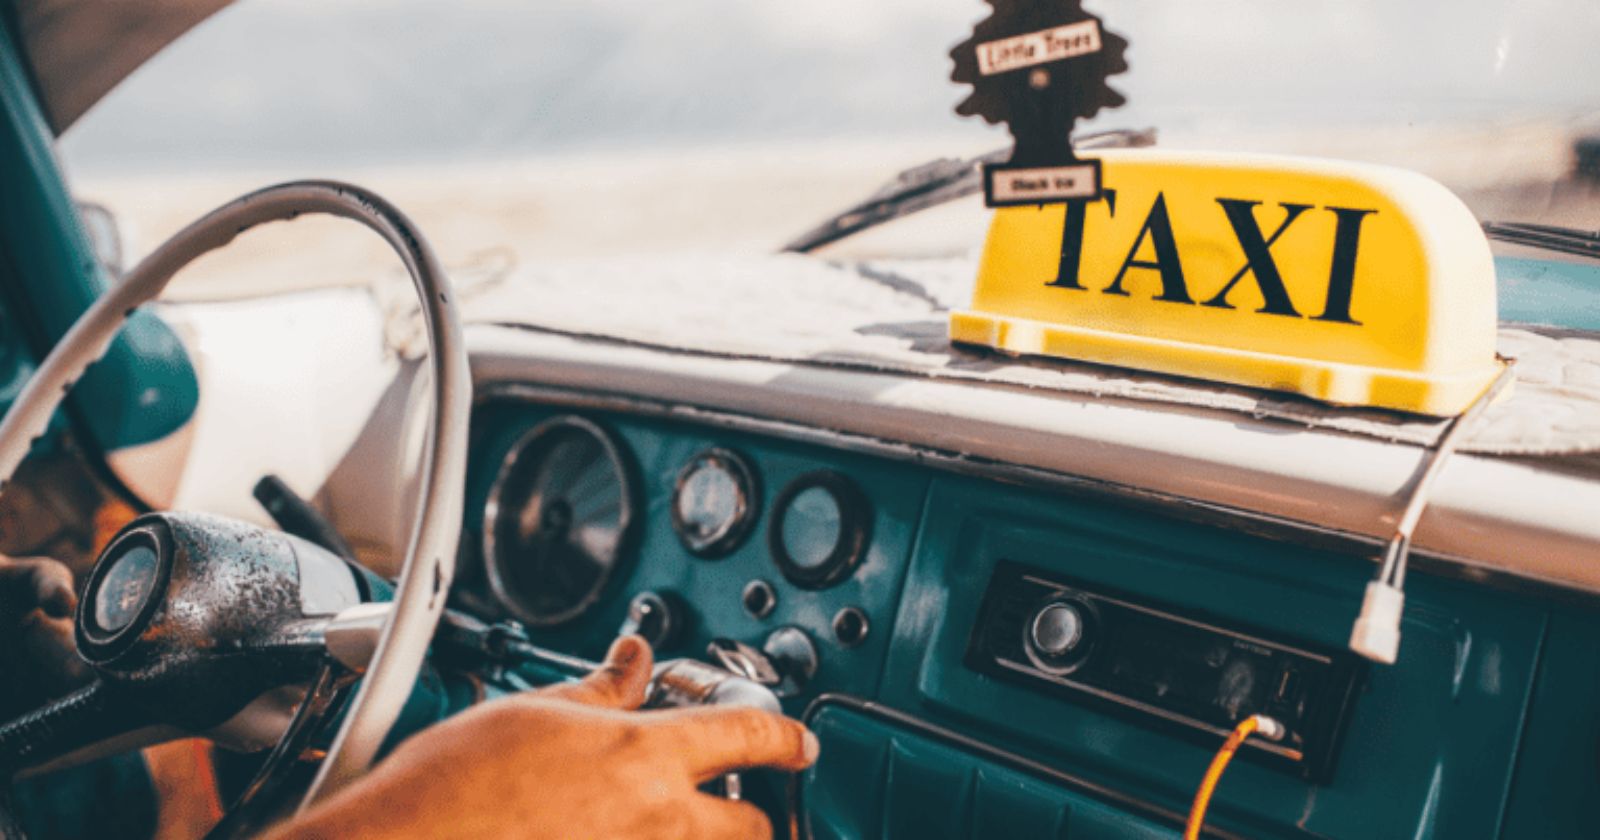 تاكسي حطين: توصيل سريع وموثوق على مدار اليوم - كيفية الطلب والدفع عبر تطبيق تاكسي حطين